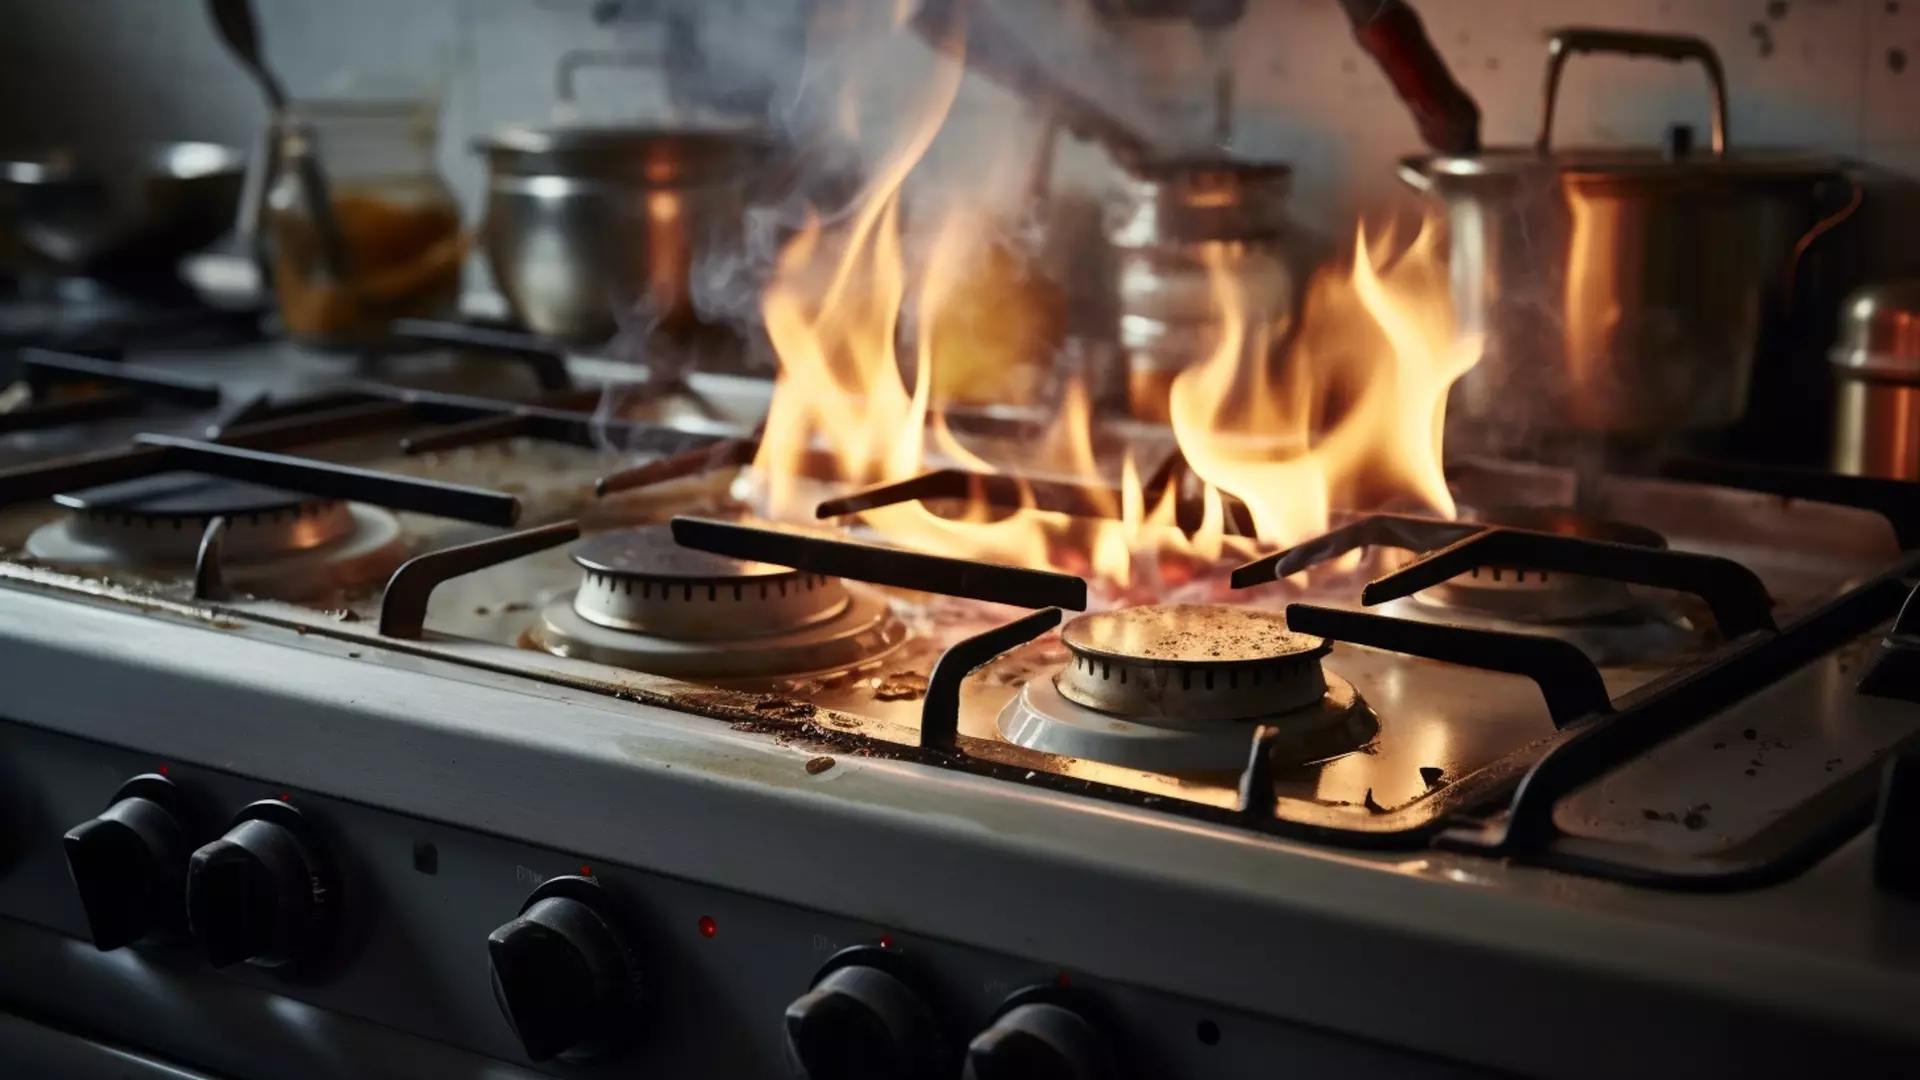 Пожар на кухне привел к серьезным последствиям для женщины в Уфе